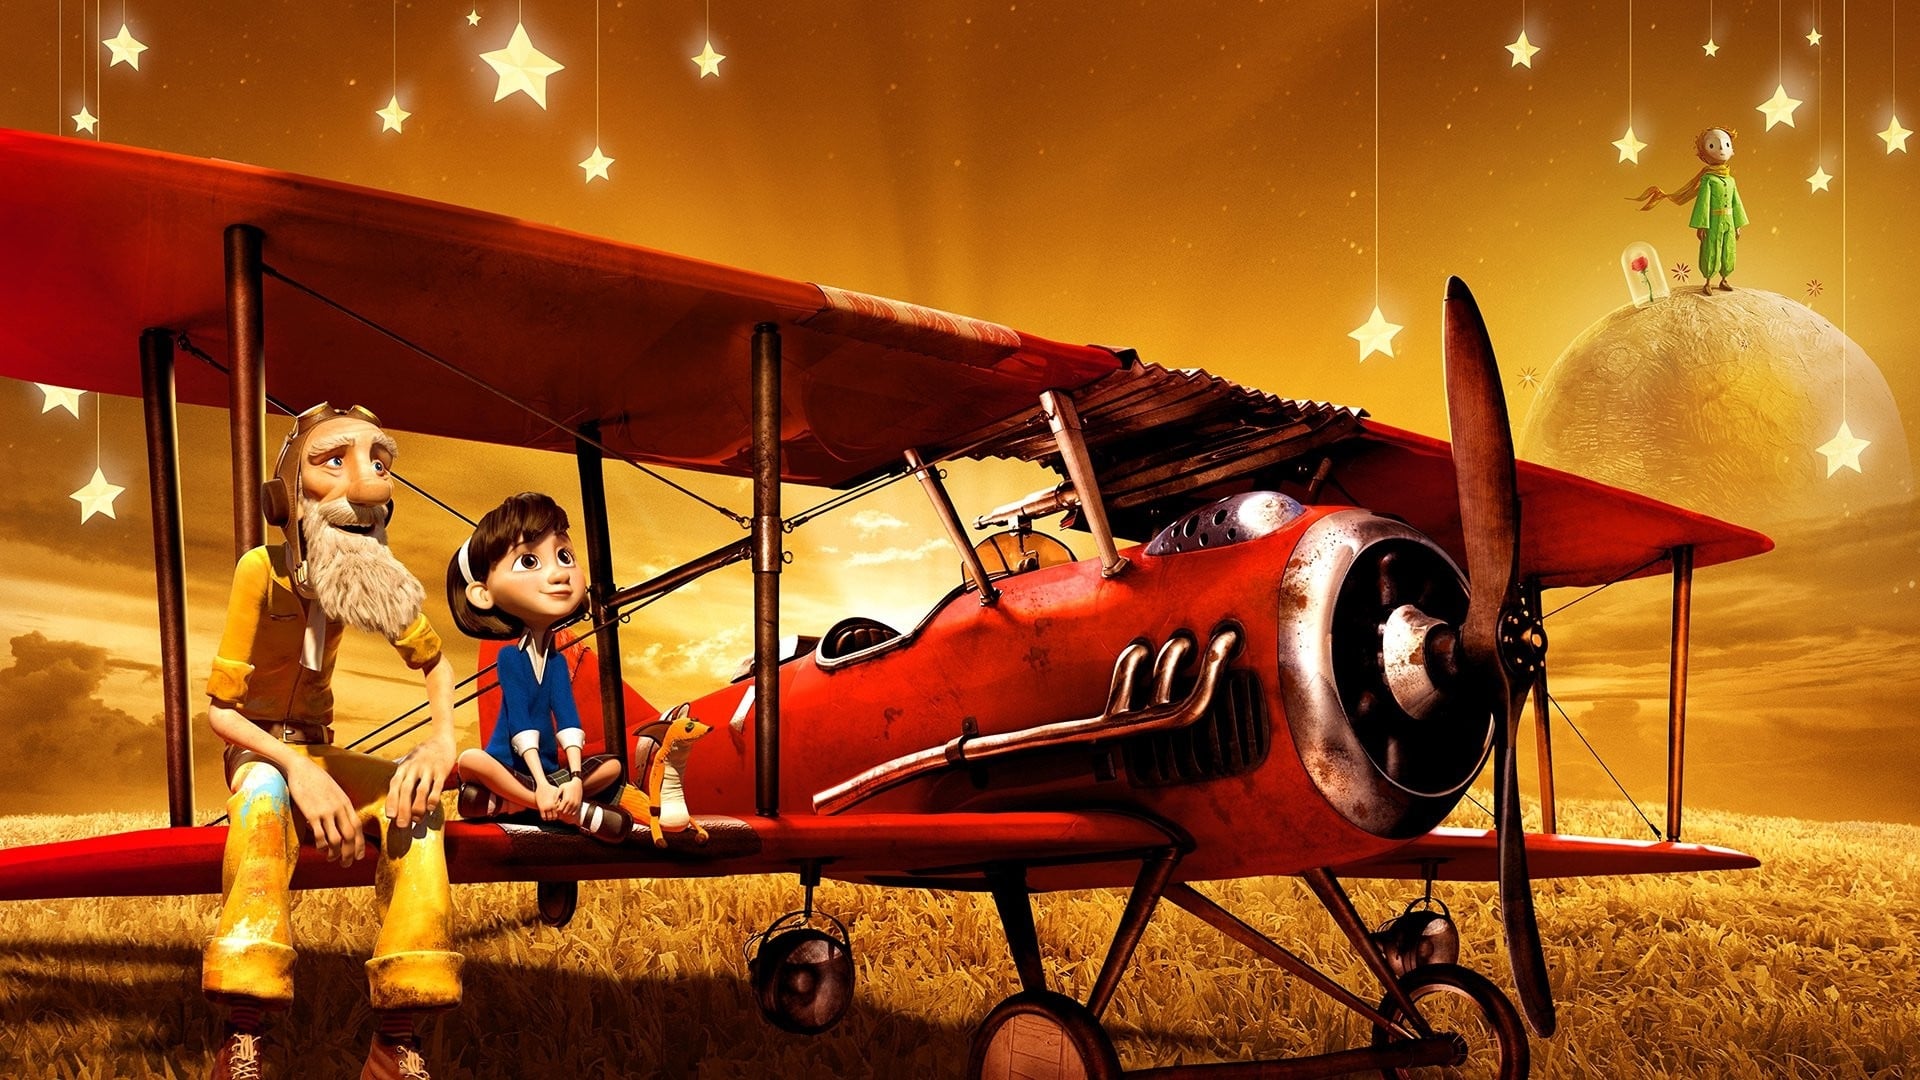 Poster Phim Hoàng Tử Bé (The Little Prince)